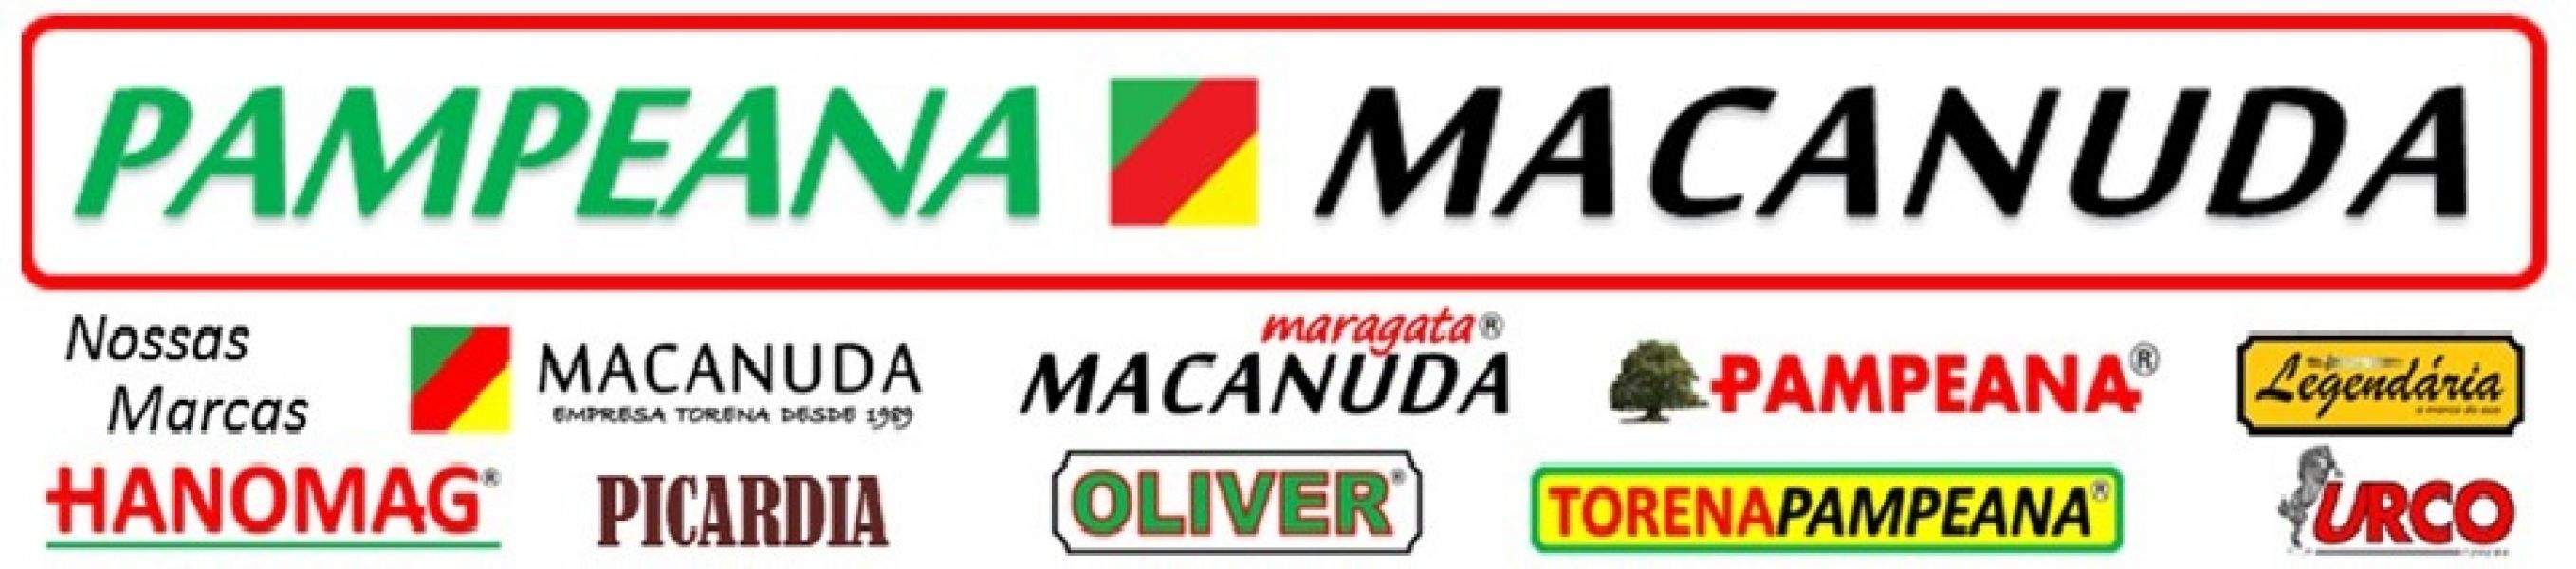 Polpa de Maracujá sem sementes máquinas Macanuda